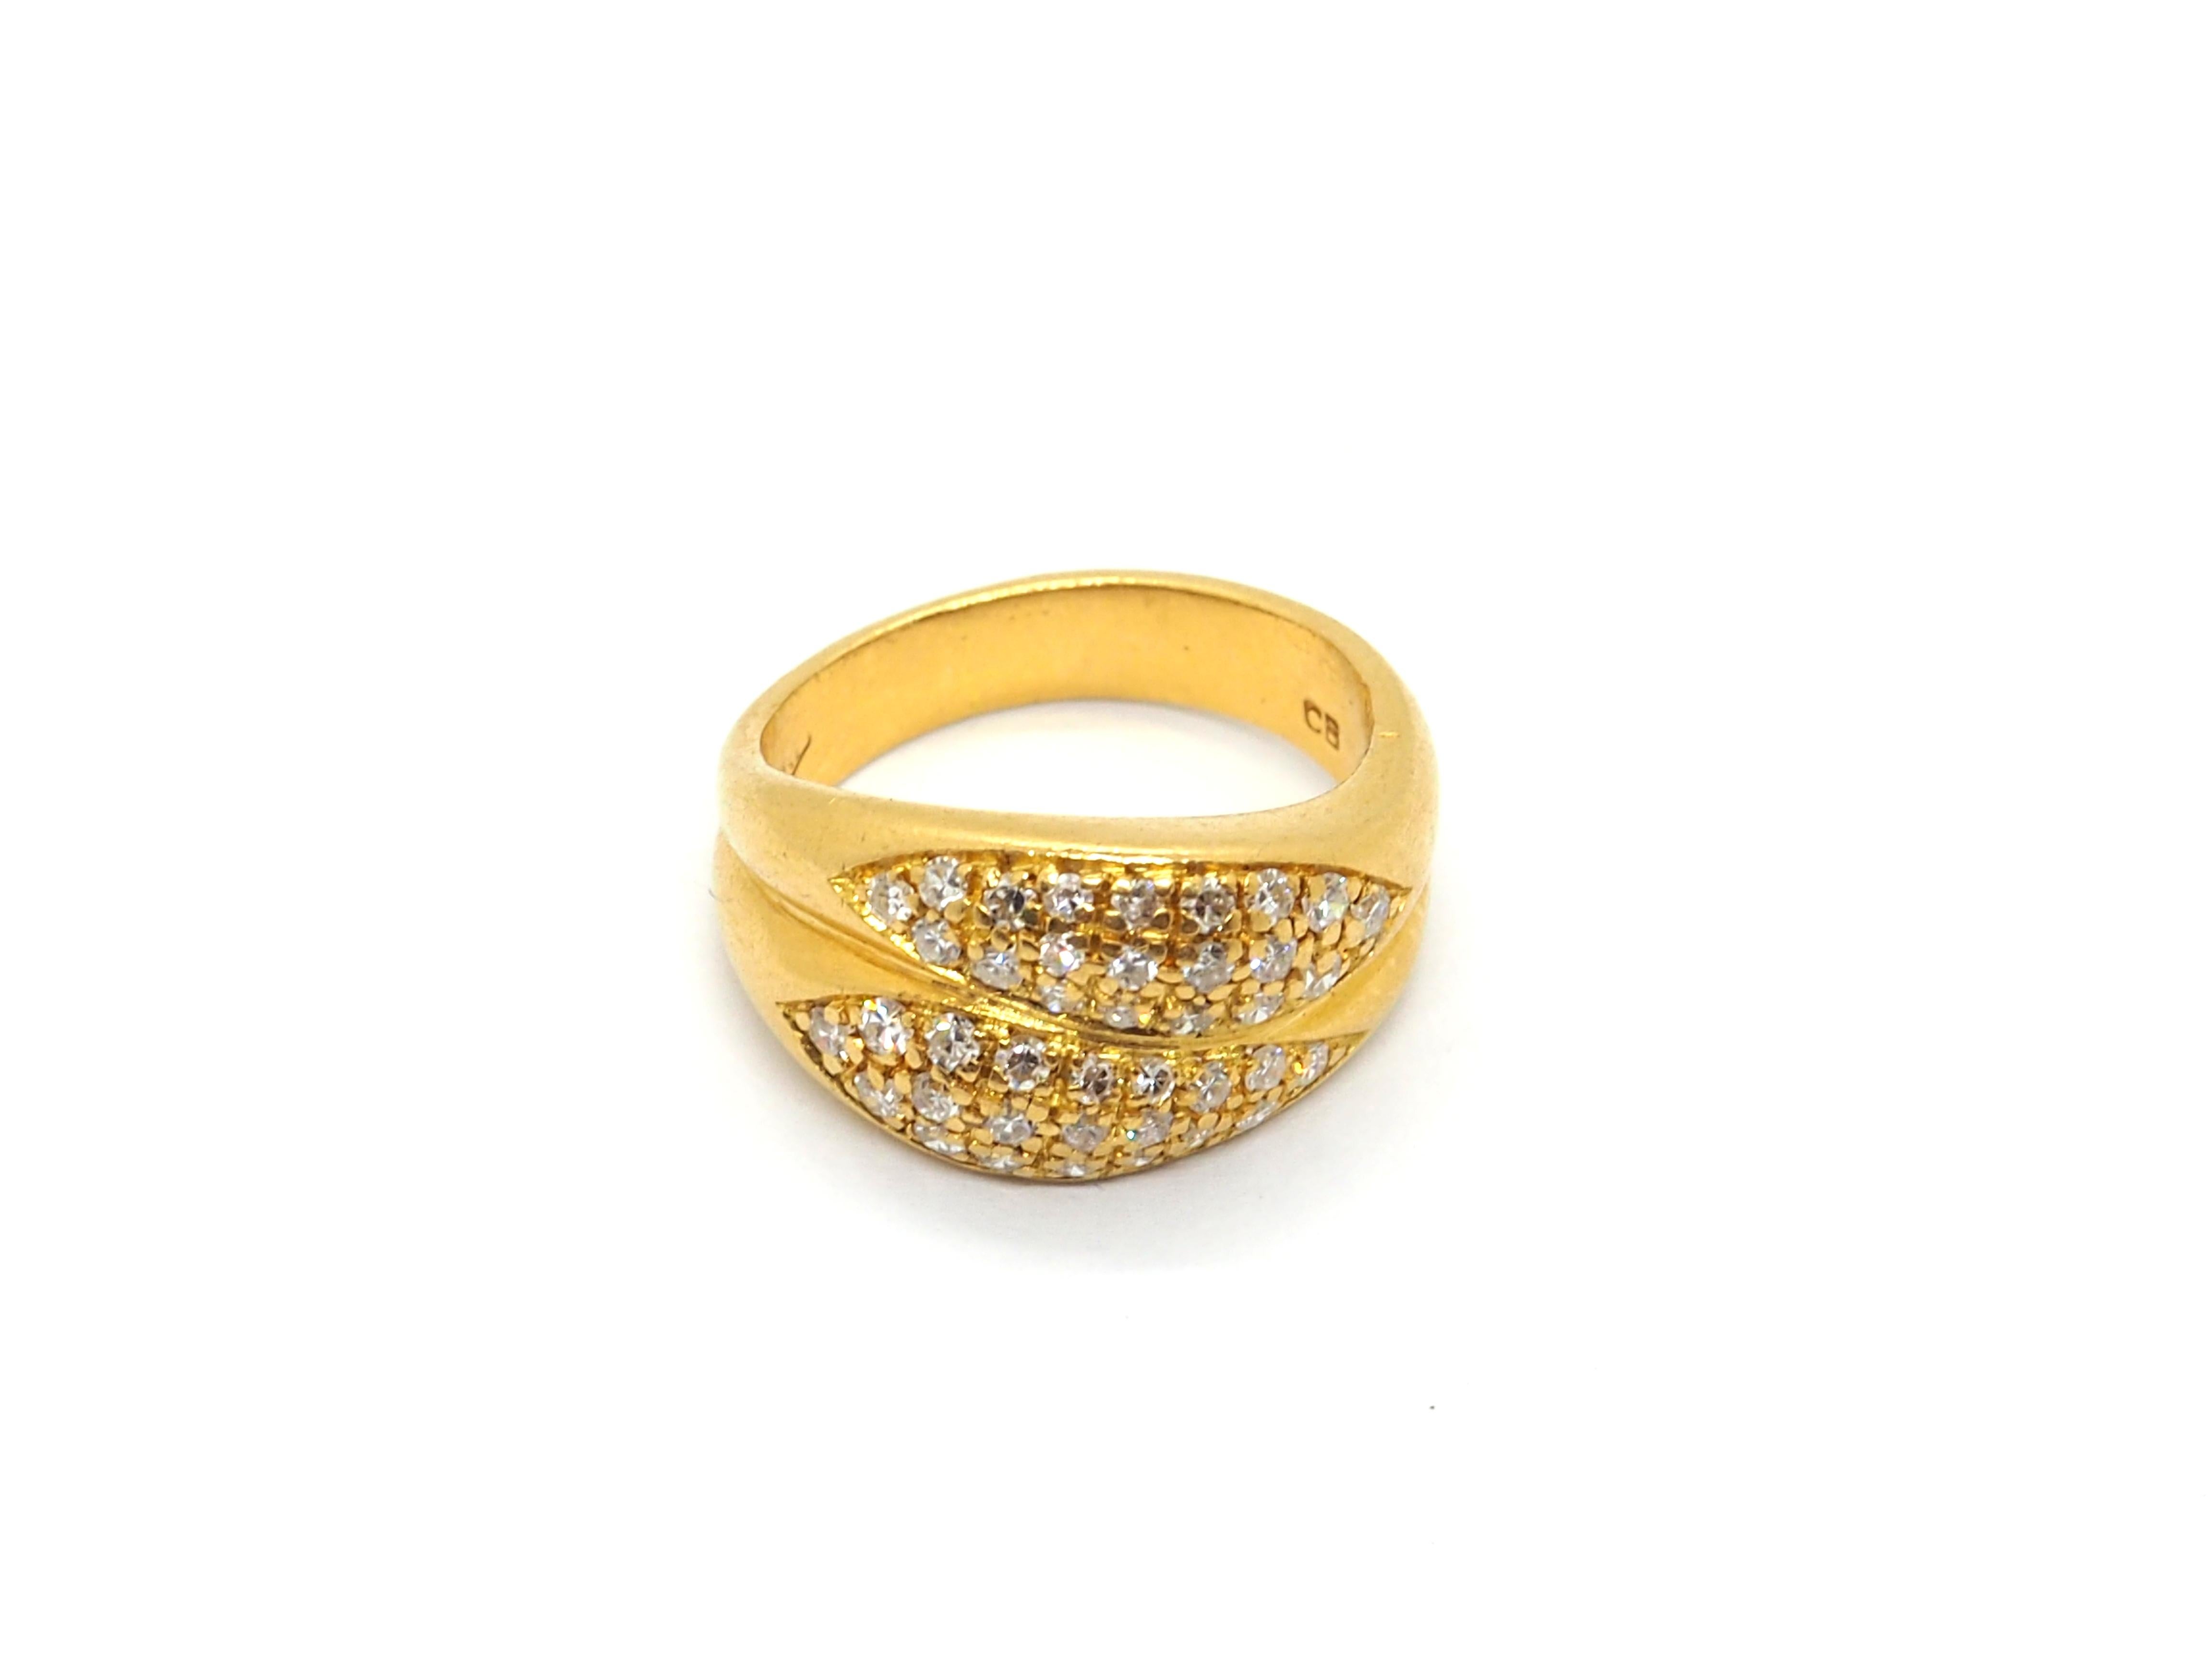 Absolut Beautiful Ladies Diamond Ring in 18 Karat Gelbgold gefertigt. Der Ring ist doppelt ausgeführt, mit insgesamt 40 runden Diamanten auf der Vorderseite eingelegt, etwa 0,4 Karat 

Dieser Ring ist für jede Gelegenheit geeignet

Gesamtgewicht 7,5